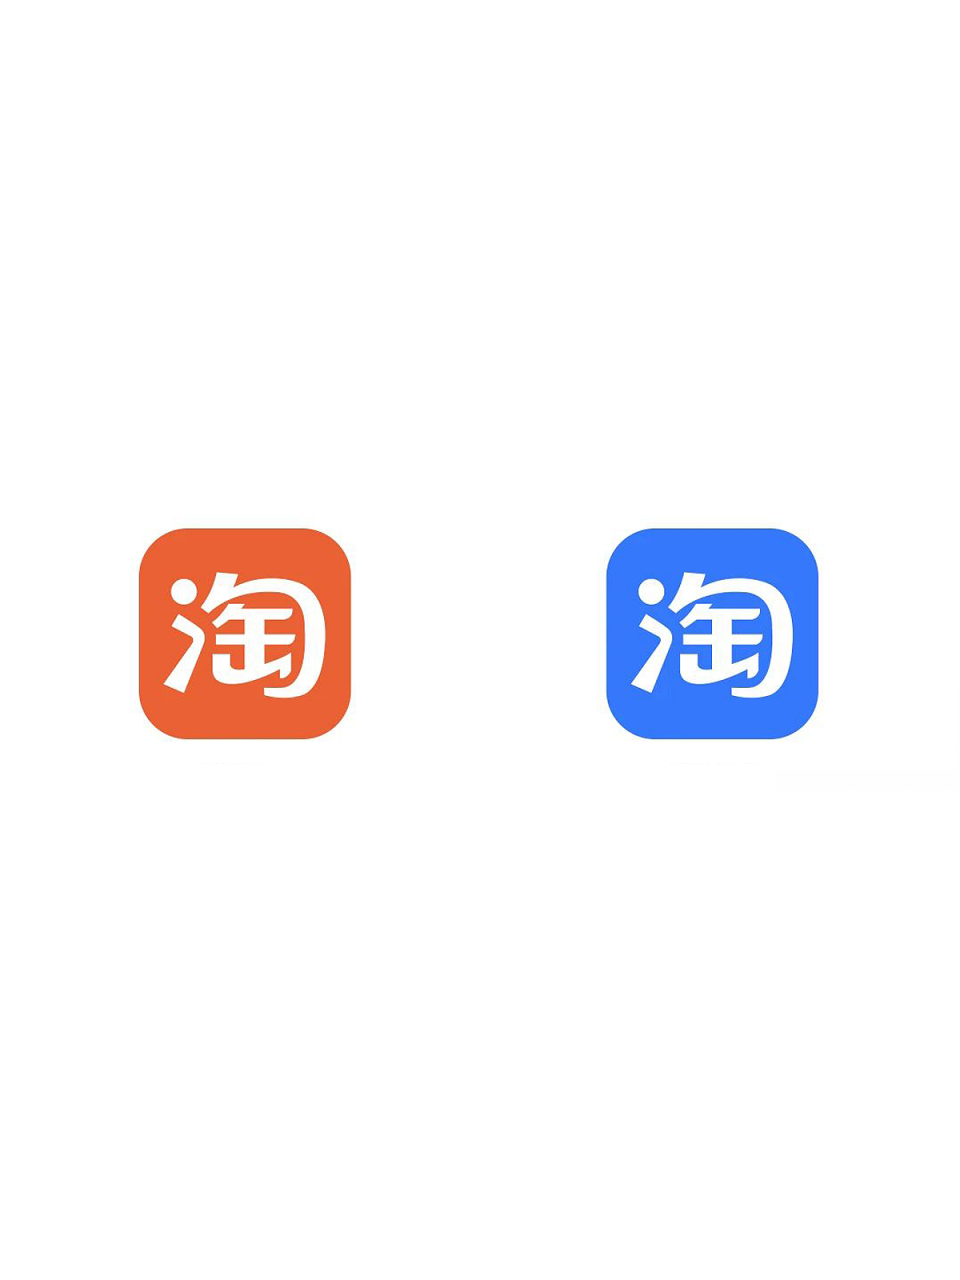 最近有消息称,淘宝即将更换其 logo 颜色,从橙色变为蓝色